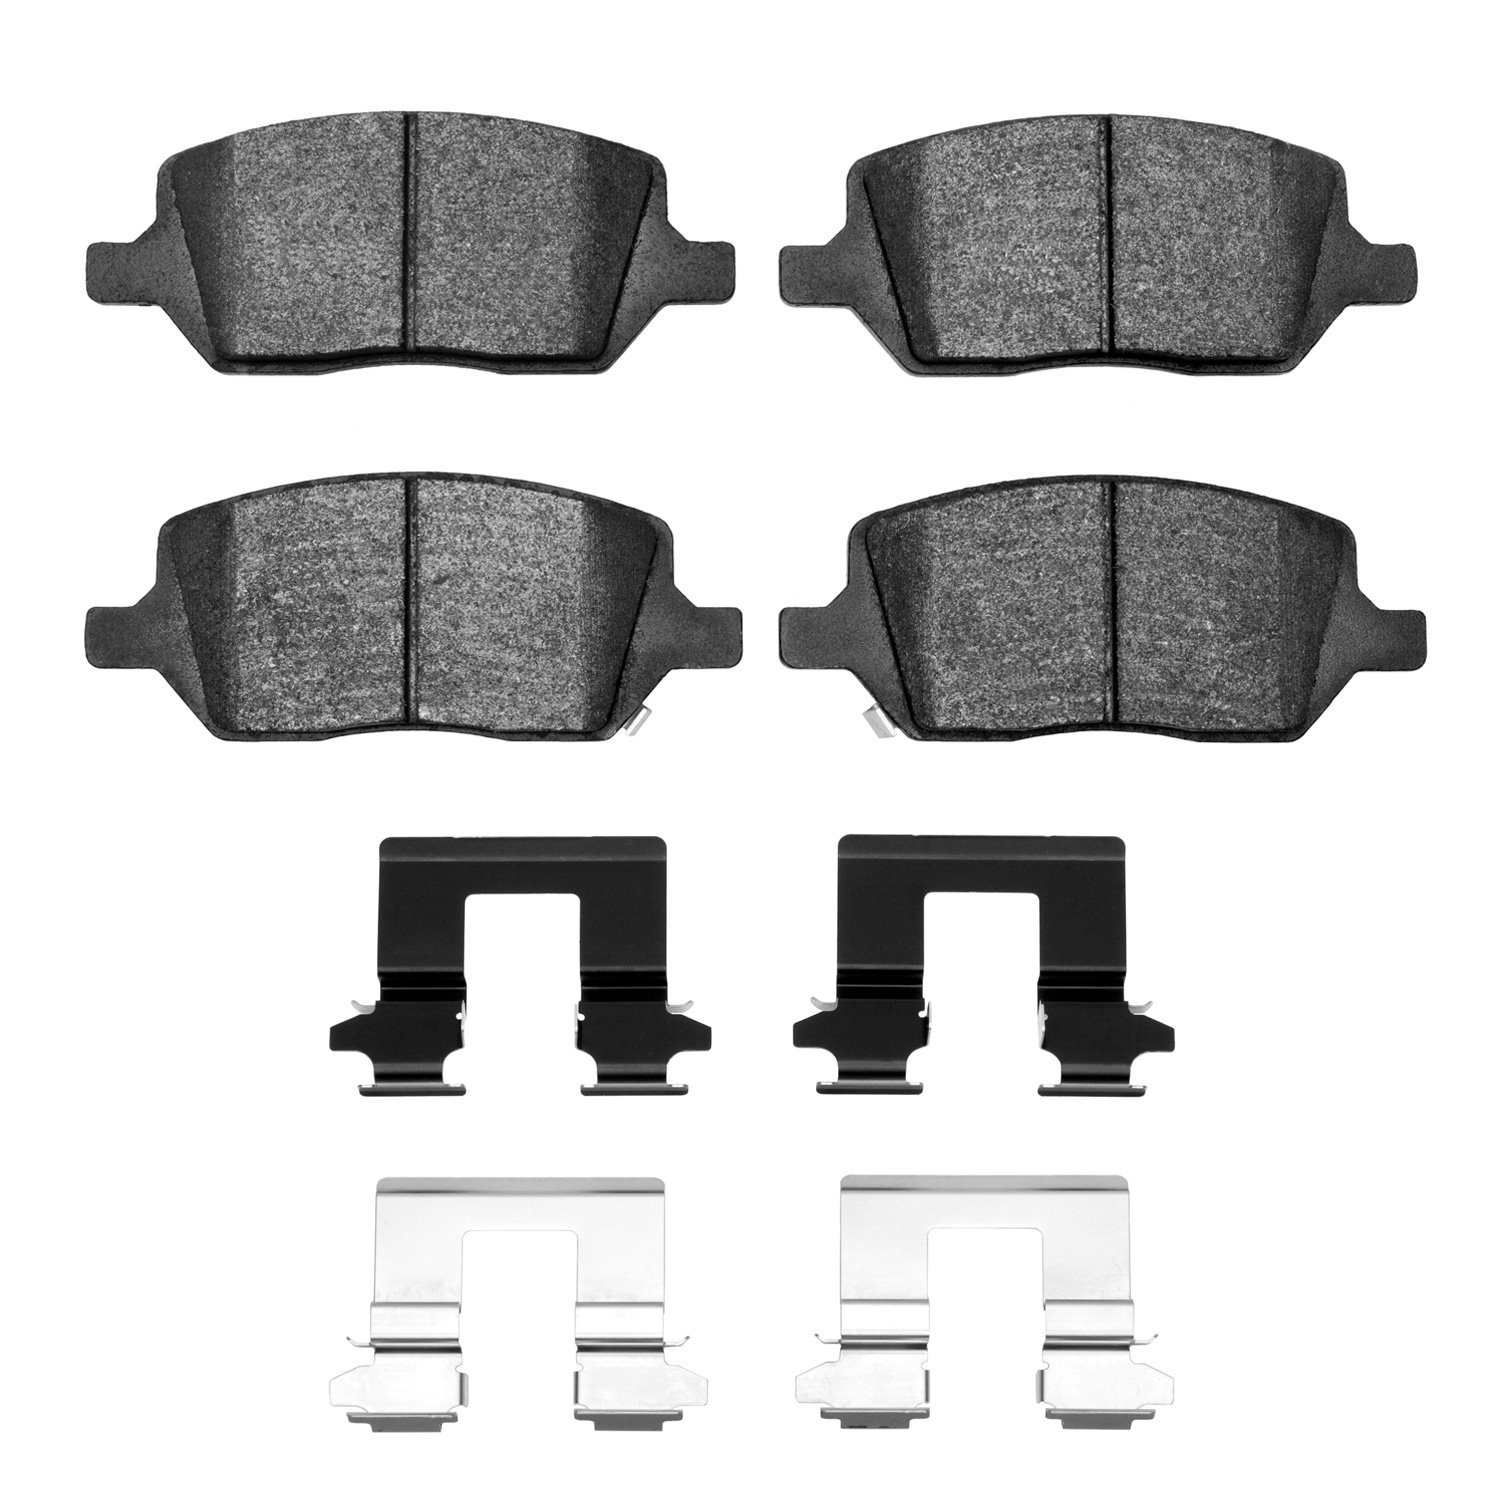 1310-1093-01 3000-Series Ceramic Brake Pads & Hardware Kit, 2005-2015 GM, Position: Rear